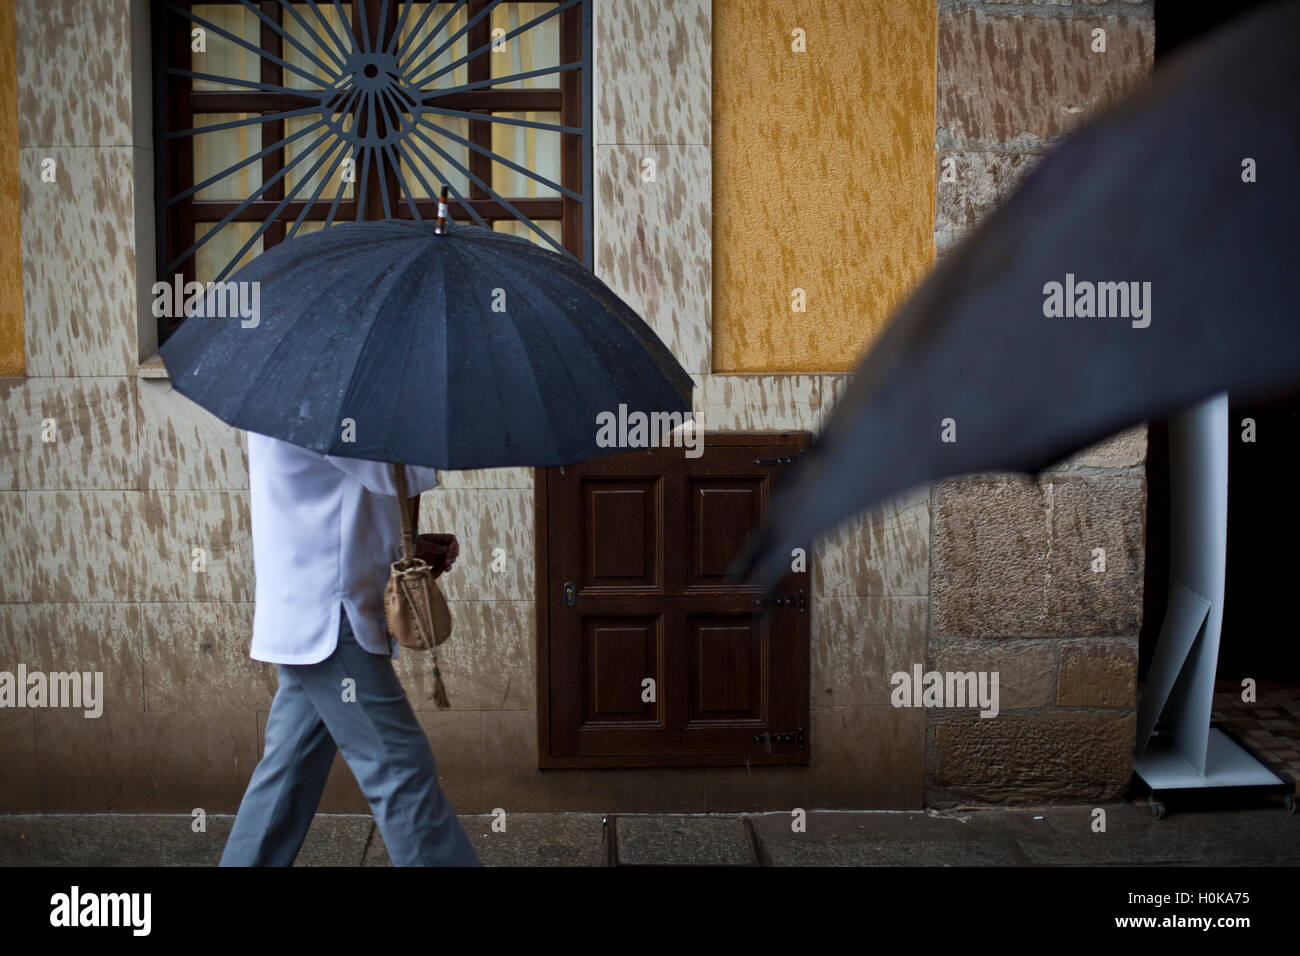 Paraguas Negros Fotos e Imágenes de stock - Alamy